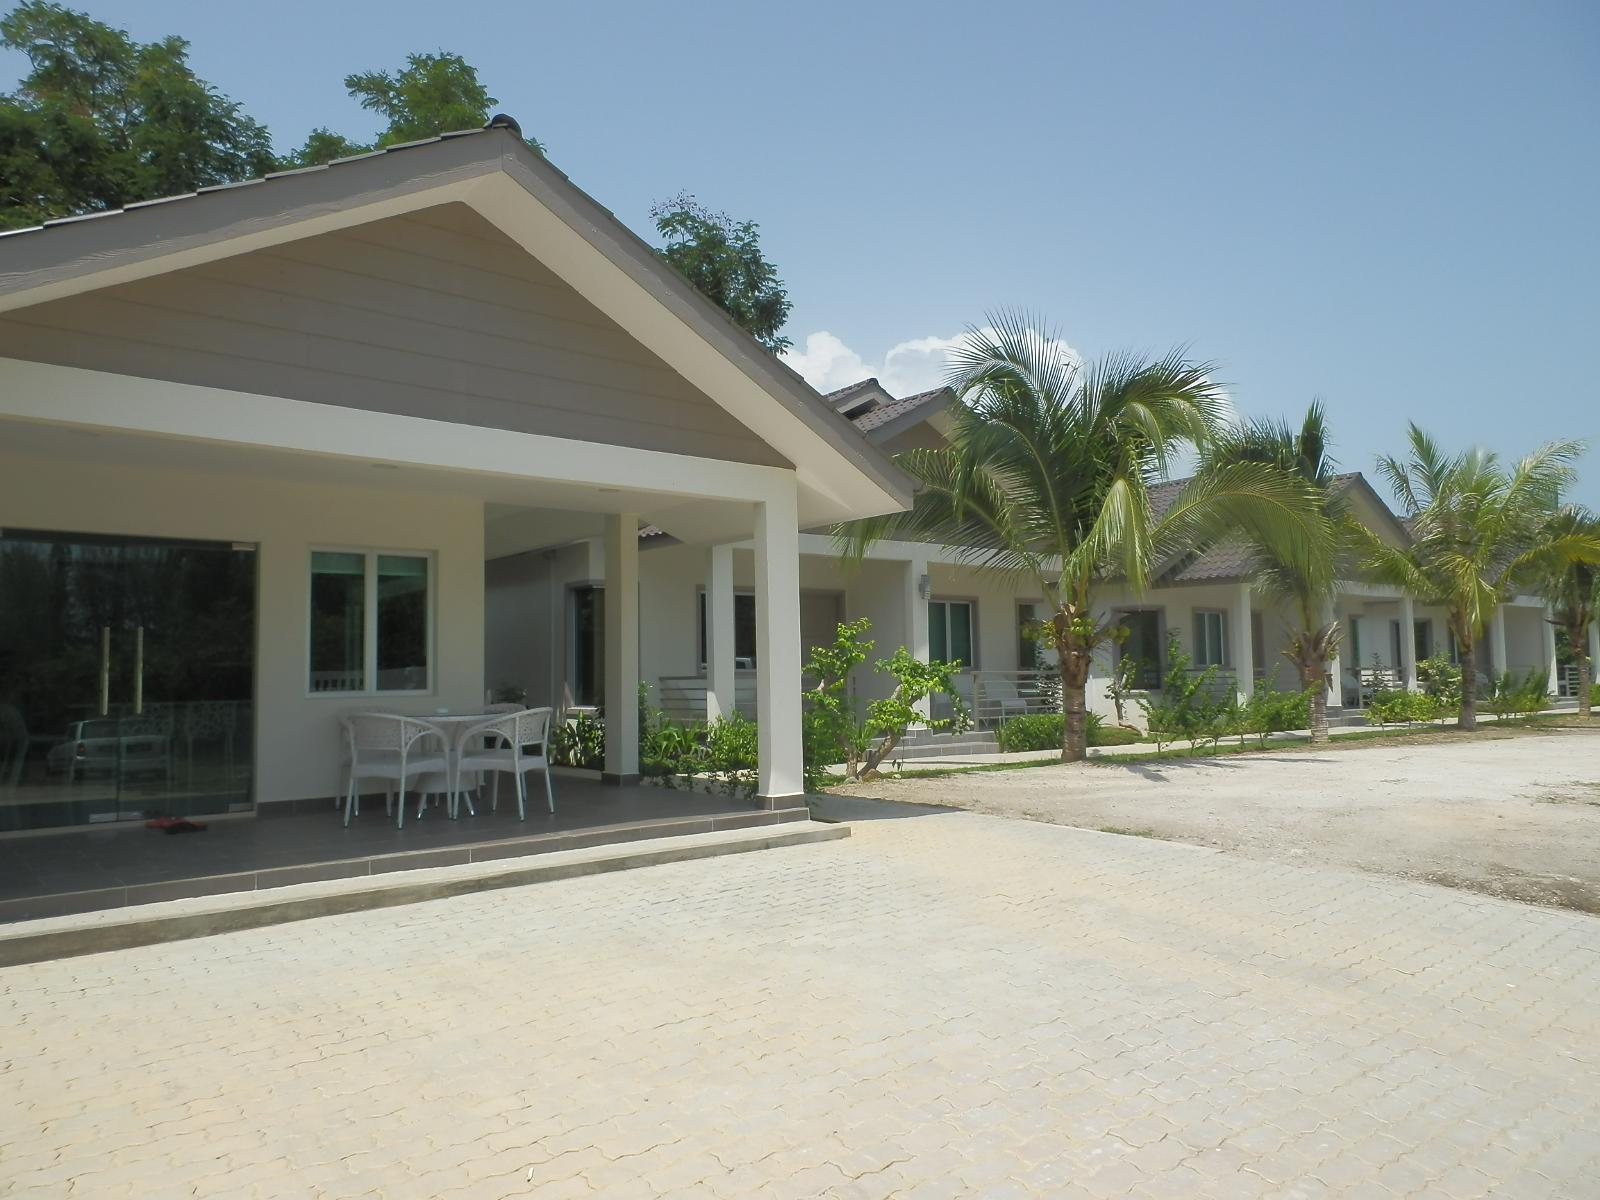 Fuuka Villa Pantai Cenang  Exterior foto